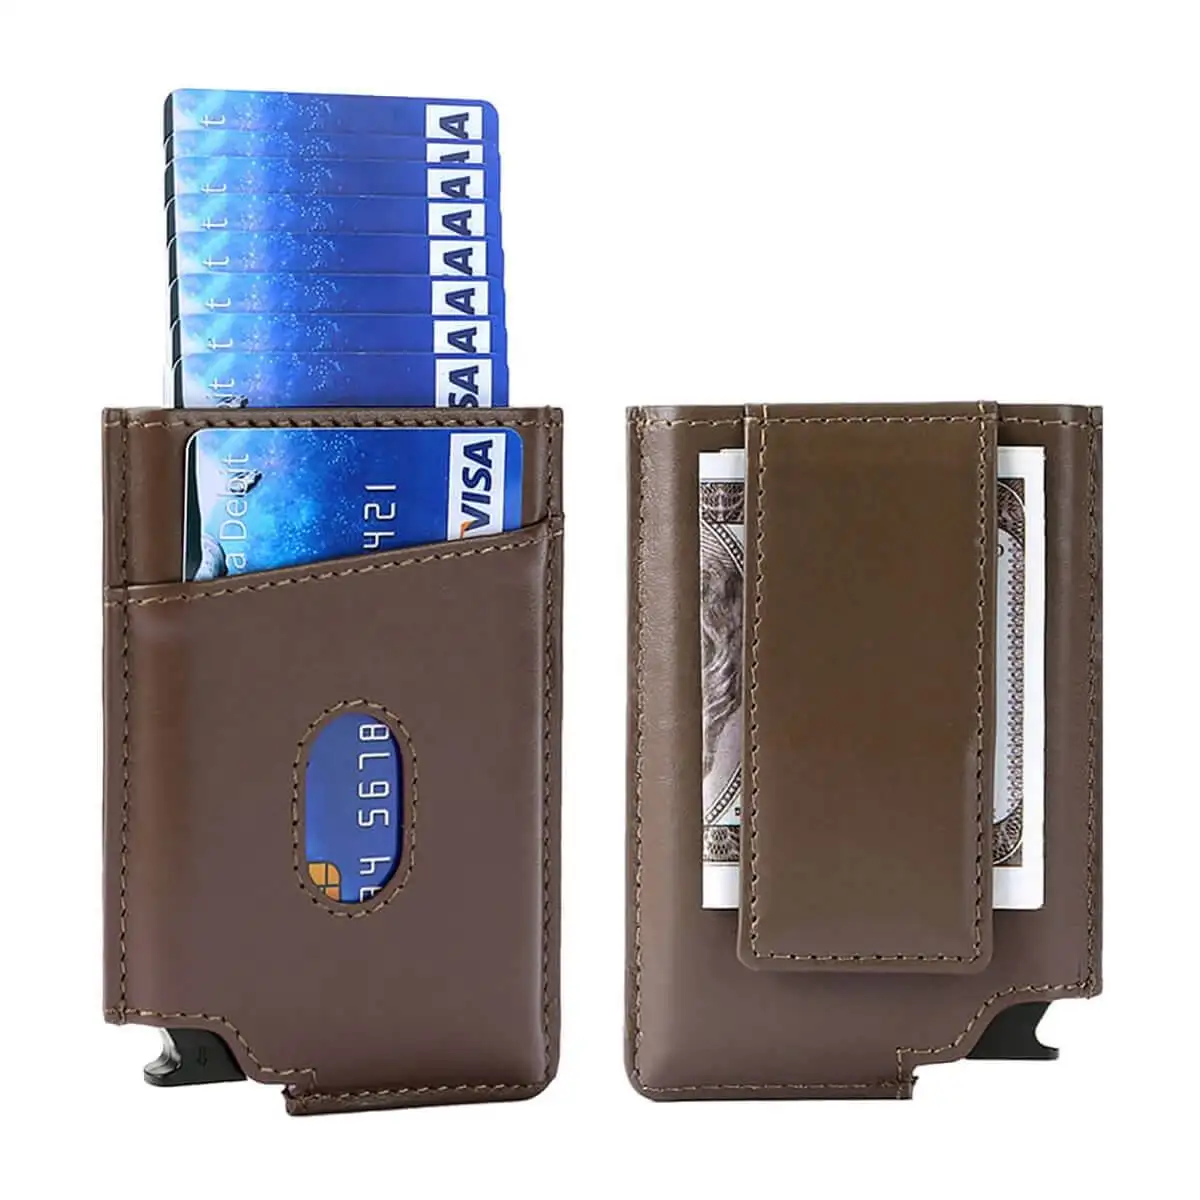 공장 직구 전문 알루미늄 팝업 지갑 슬림 미니멀리스트 남성용 RFID 차단 가죽 신용 카드 홀더